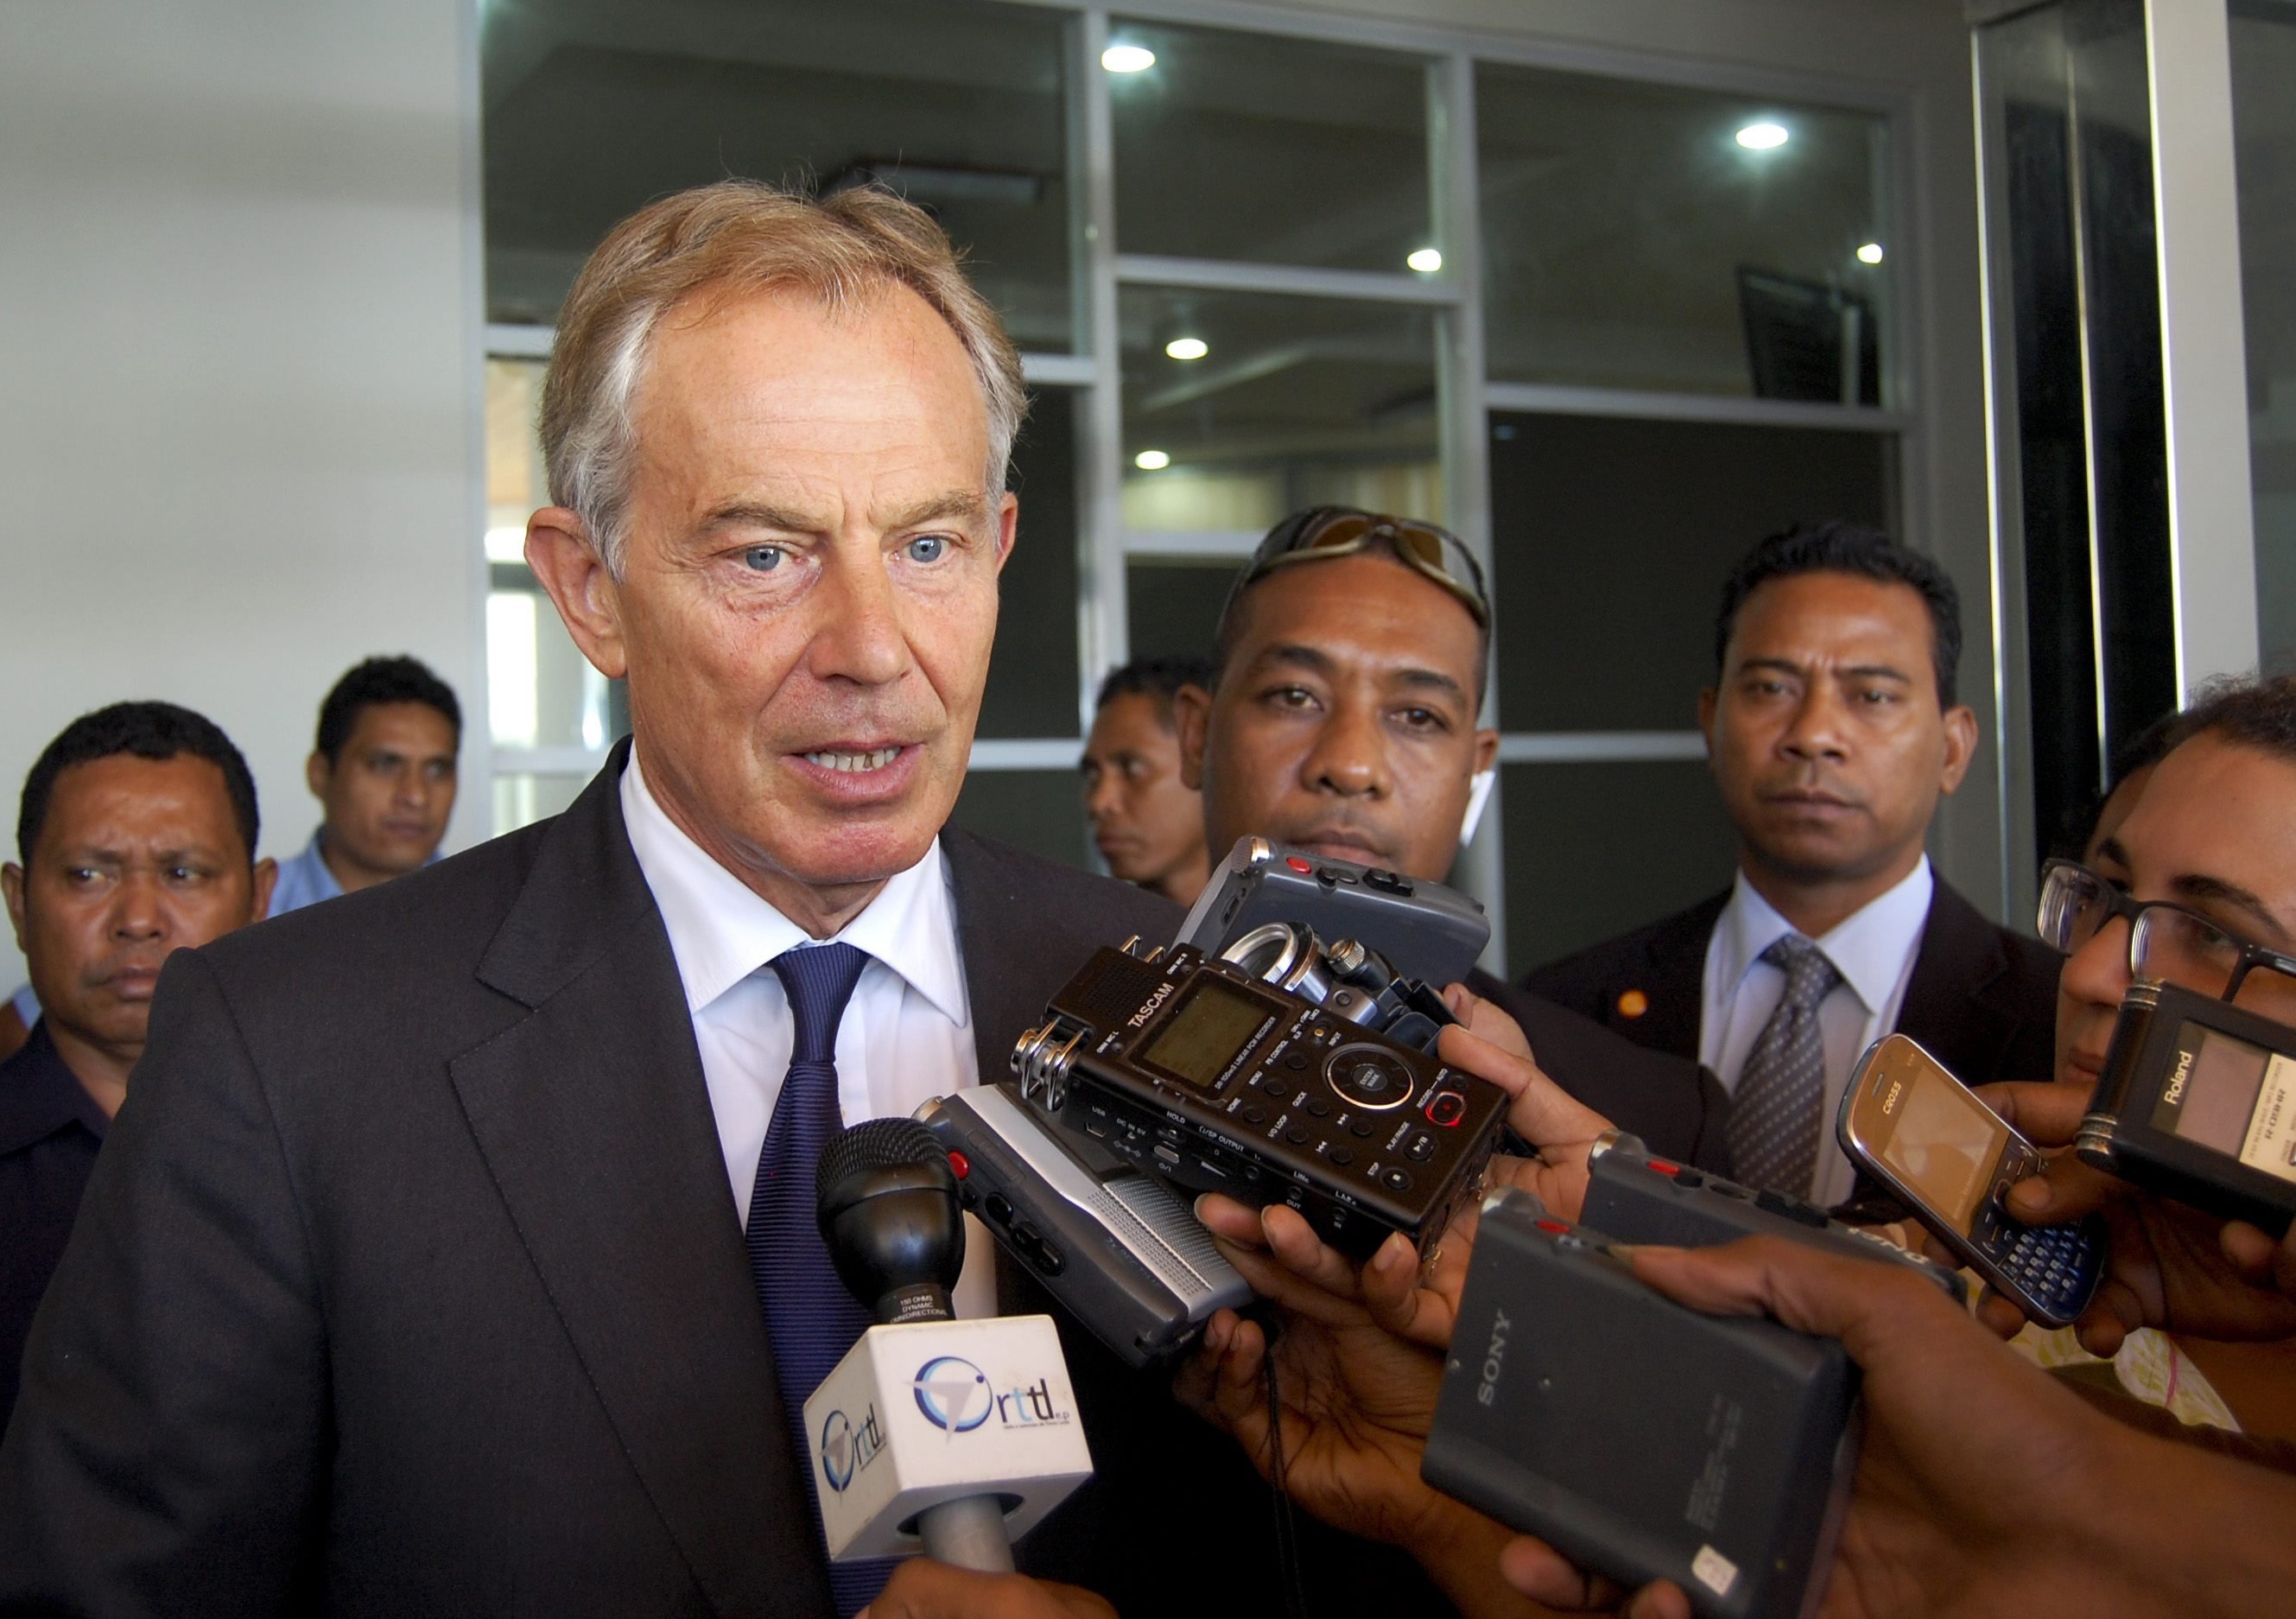 Tony Blair. Photo: EPA